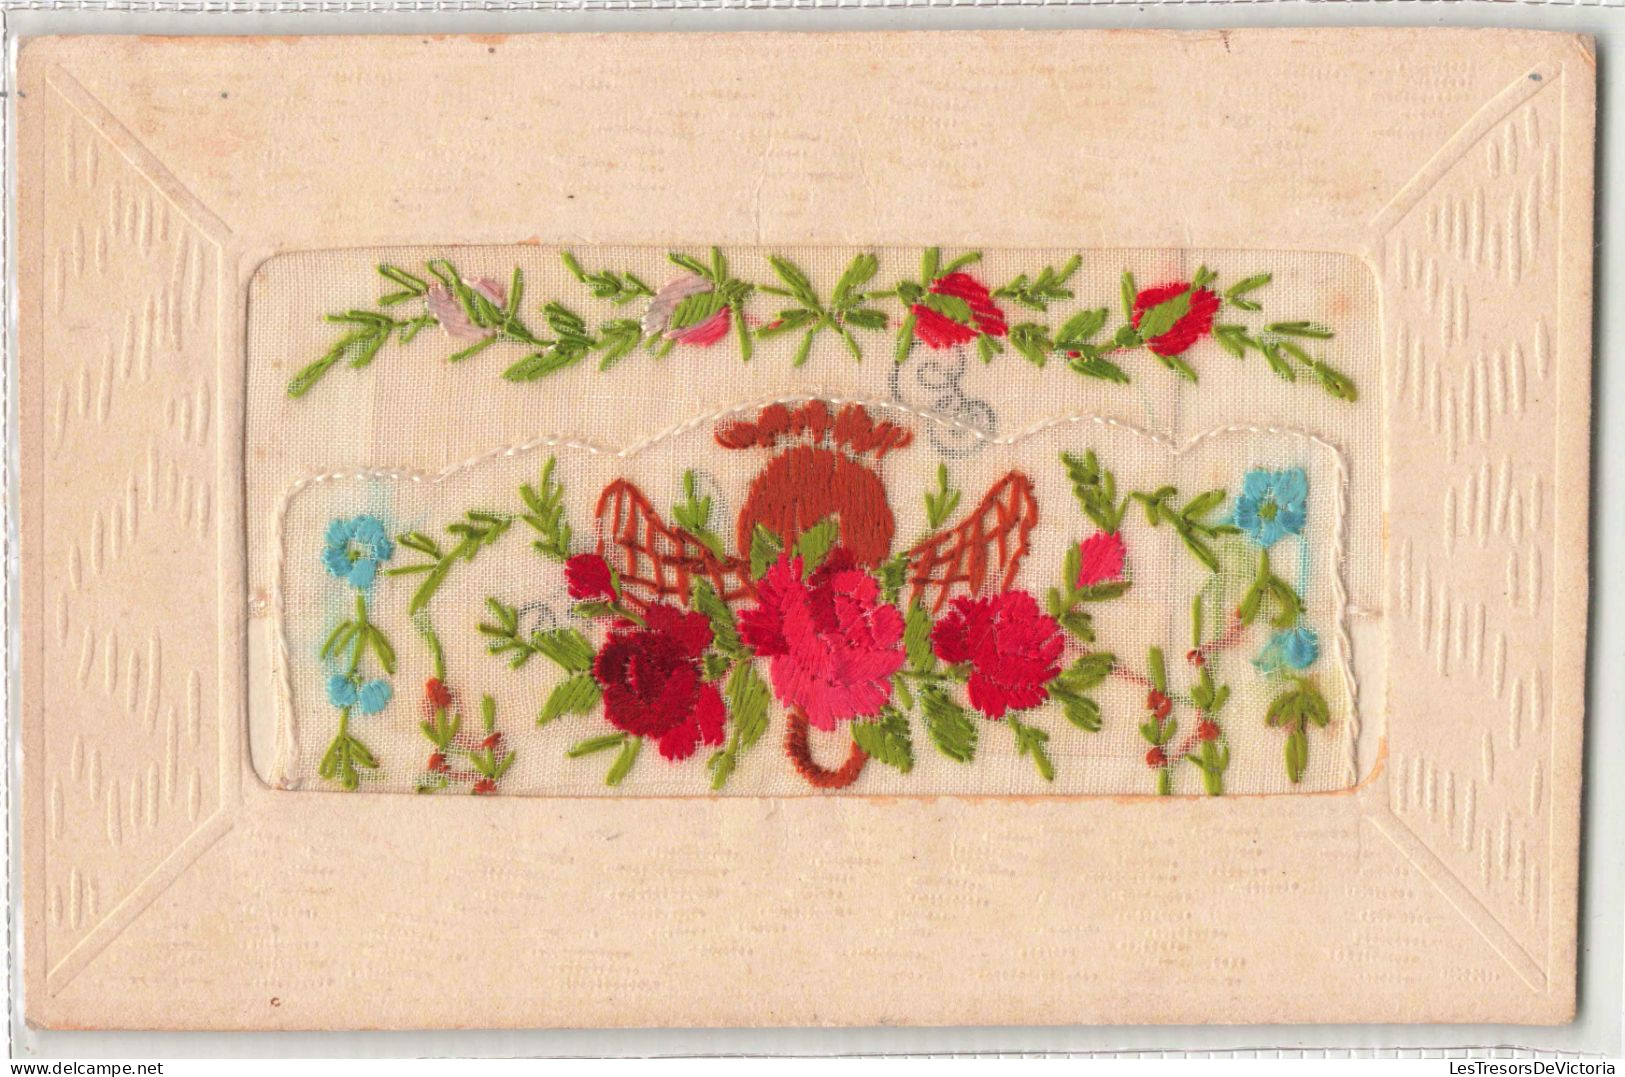 FANTAISIES - Fleurs - Brodée - Colorisé - Carte Postale Ancienne - Brodées